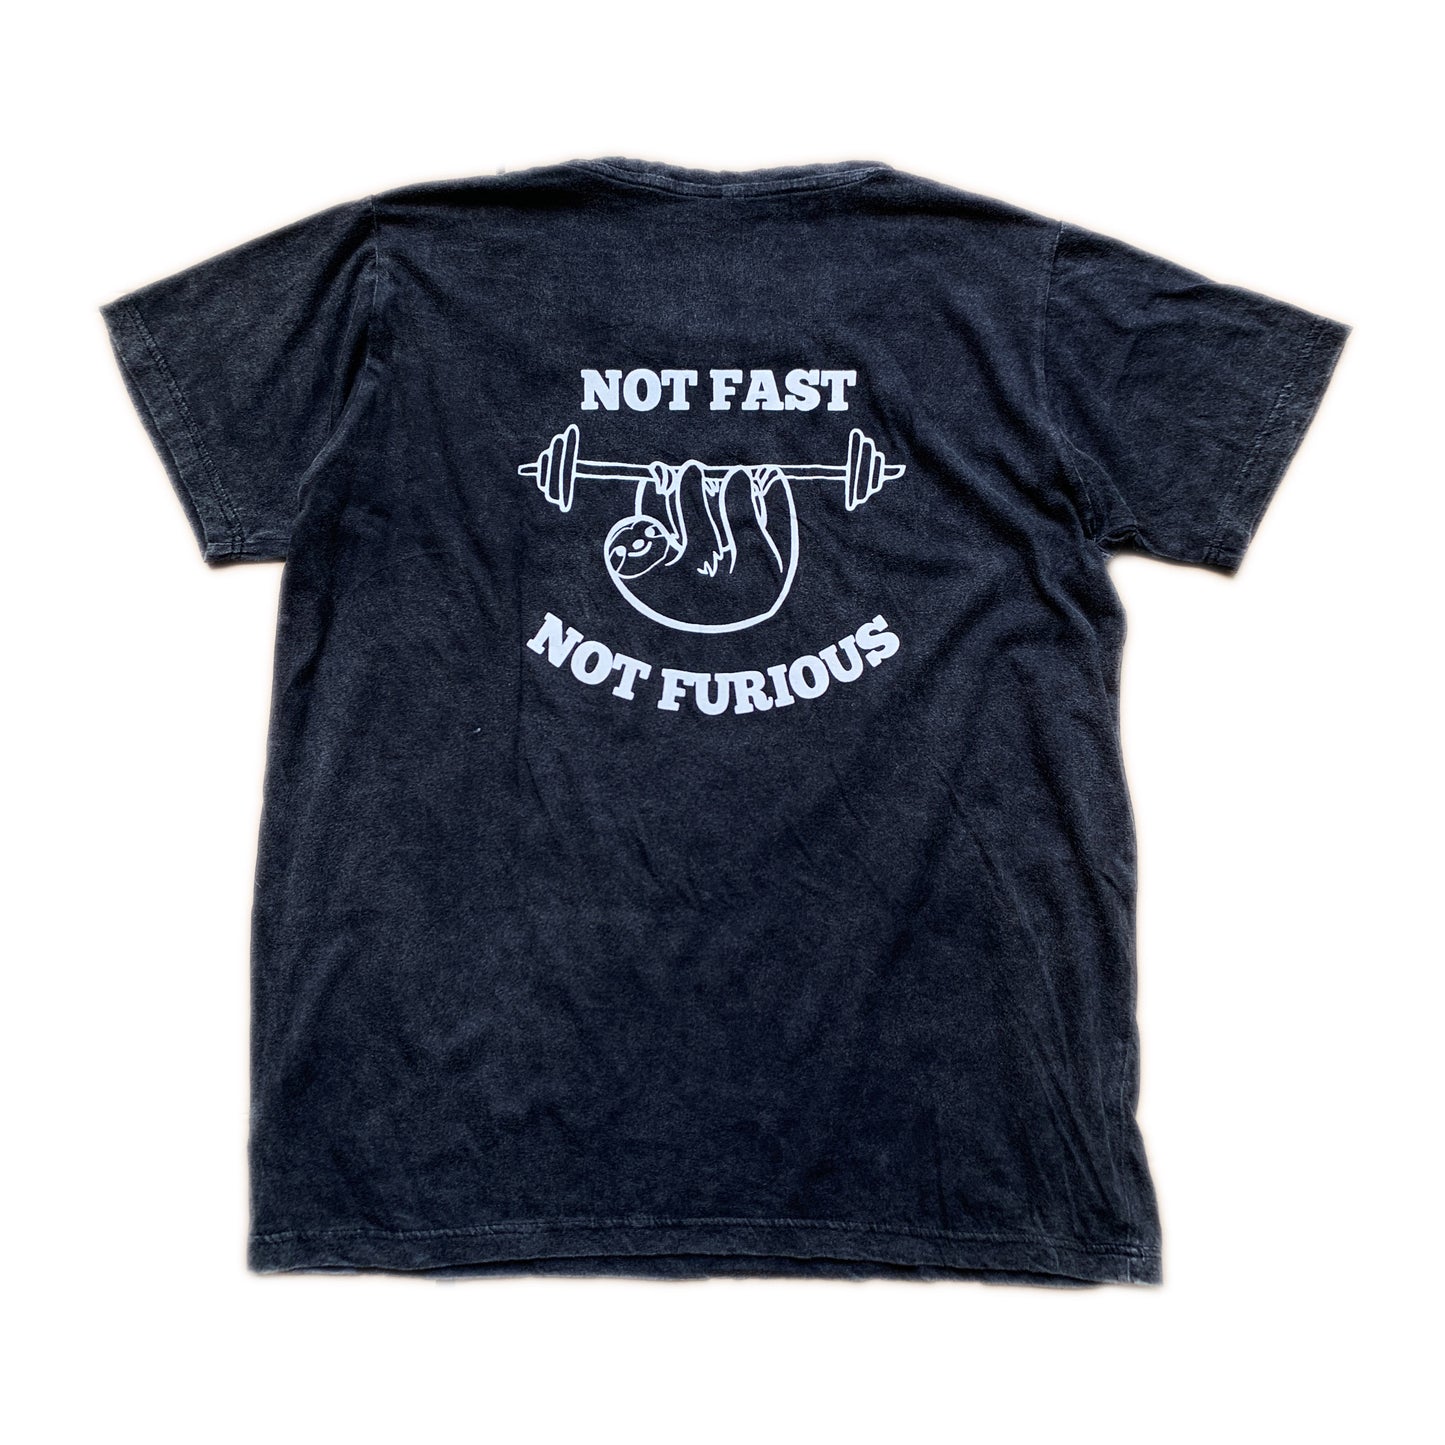 Not fast not furious (Barbell) T-shirt